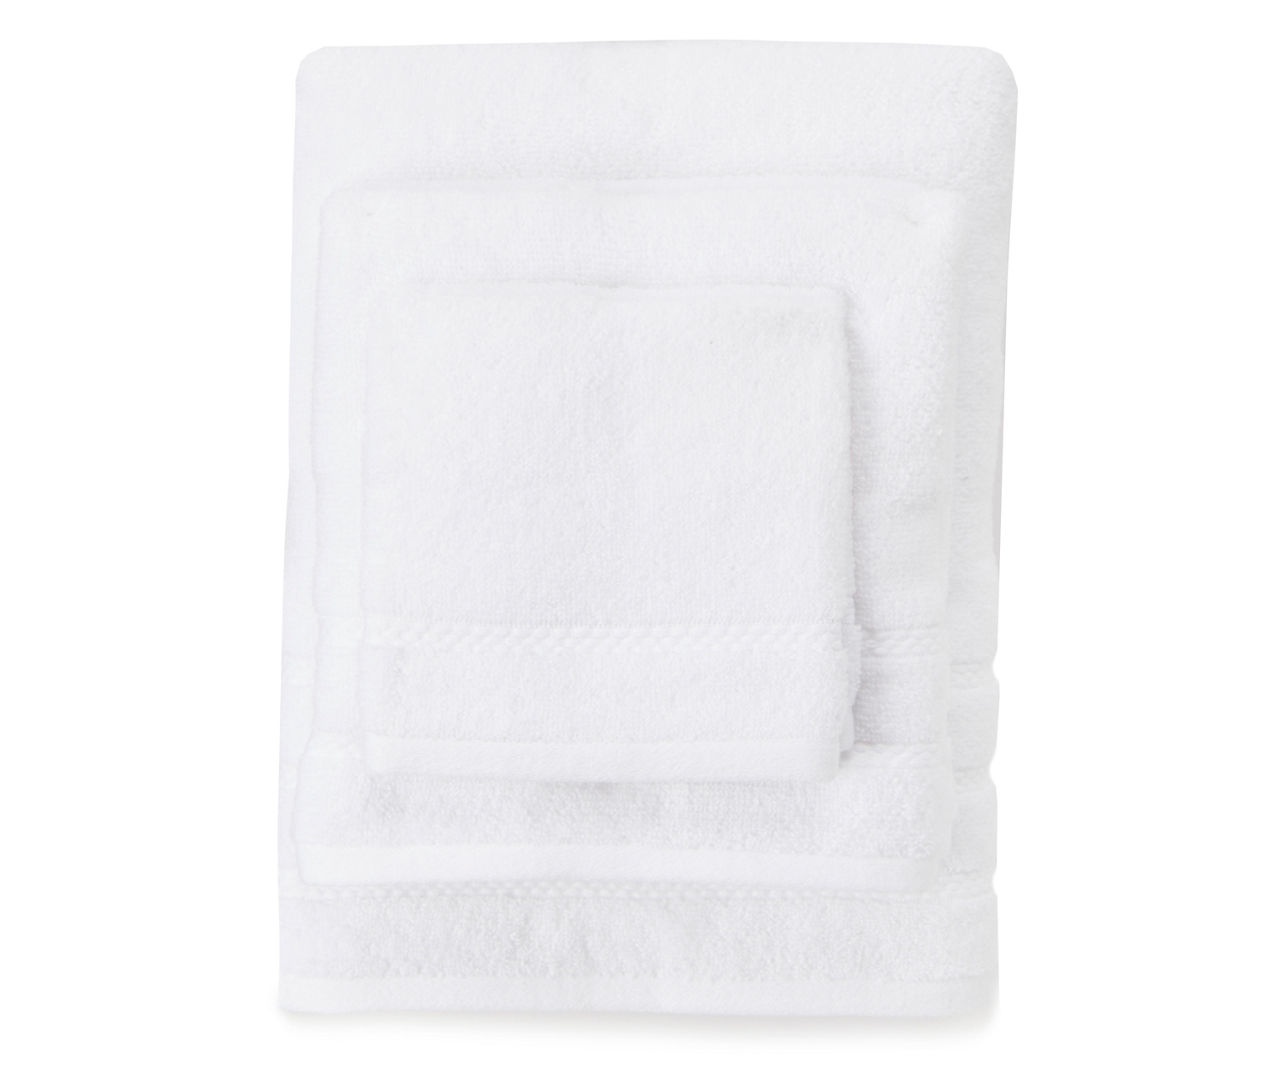 LOCHAS 6 Piece Towel Set and 4 Piece Bath Towel Set Bundle Visit